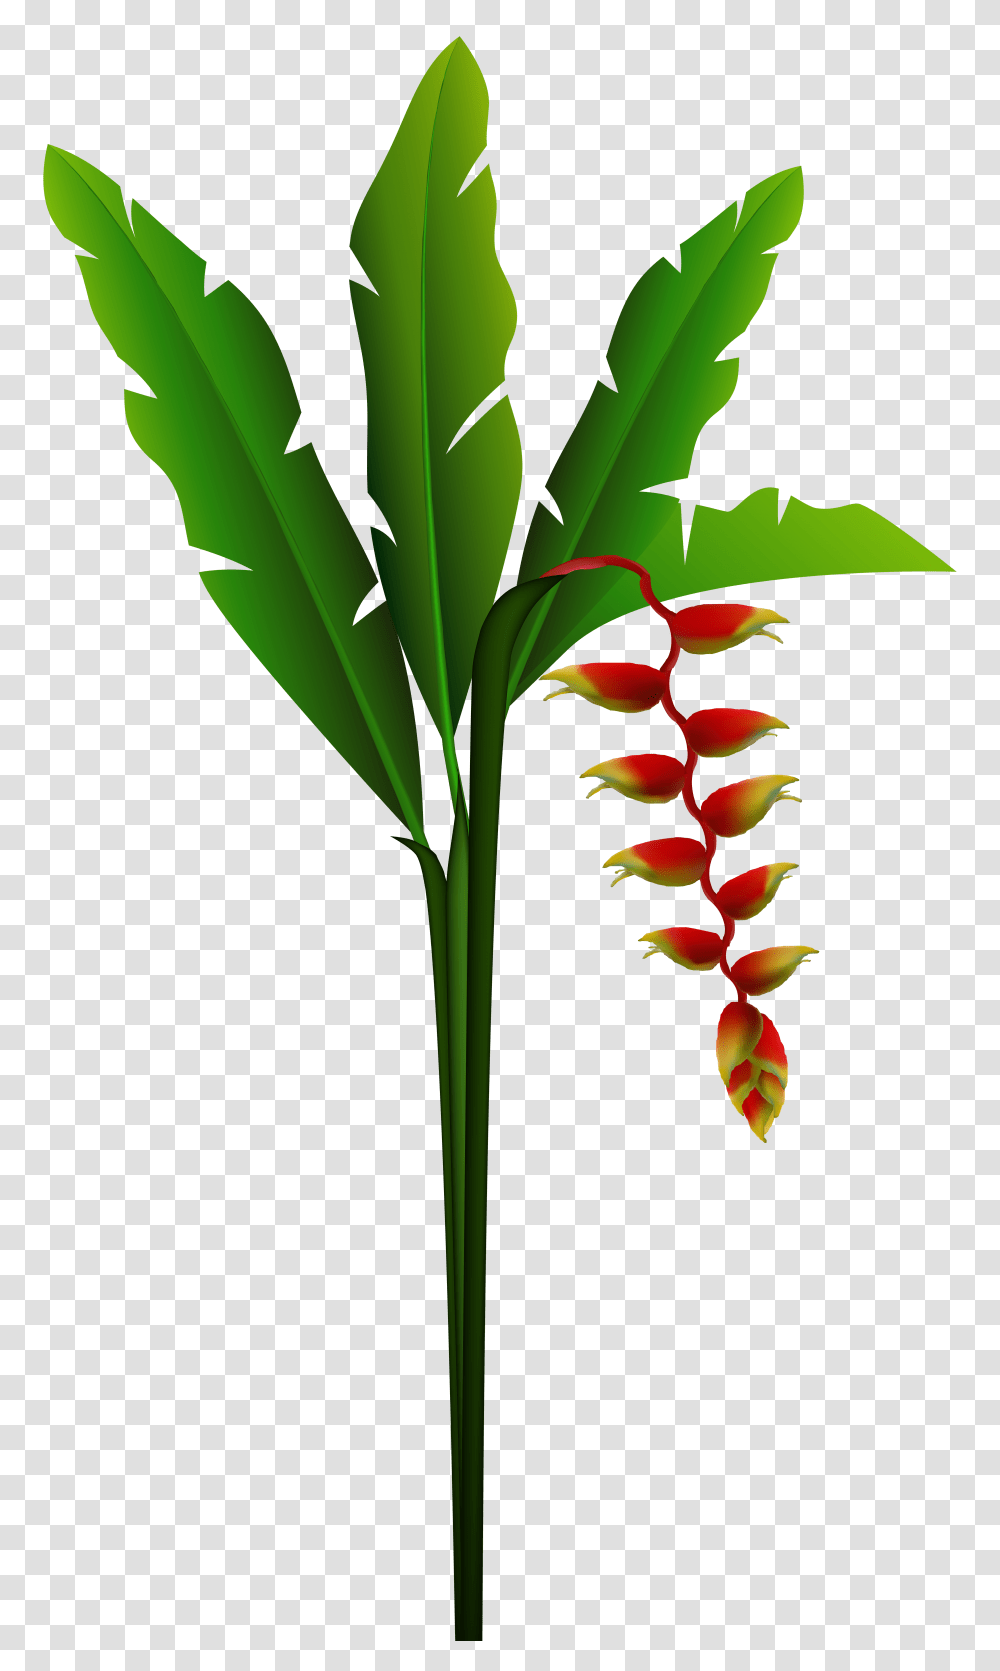 Clipart Red Tropical Flower Pictures, Plant, Flower Arrangement, Petal Transparent Png